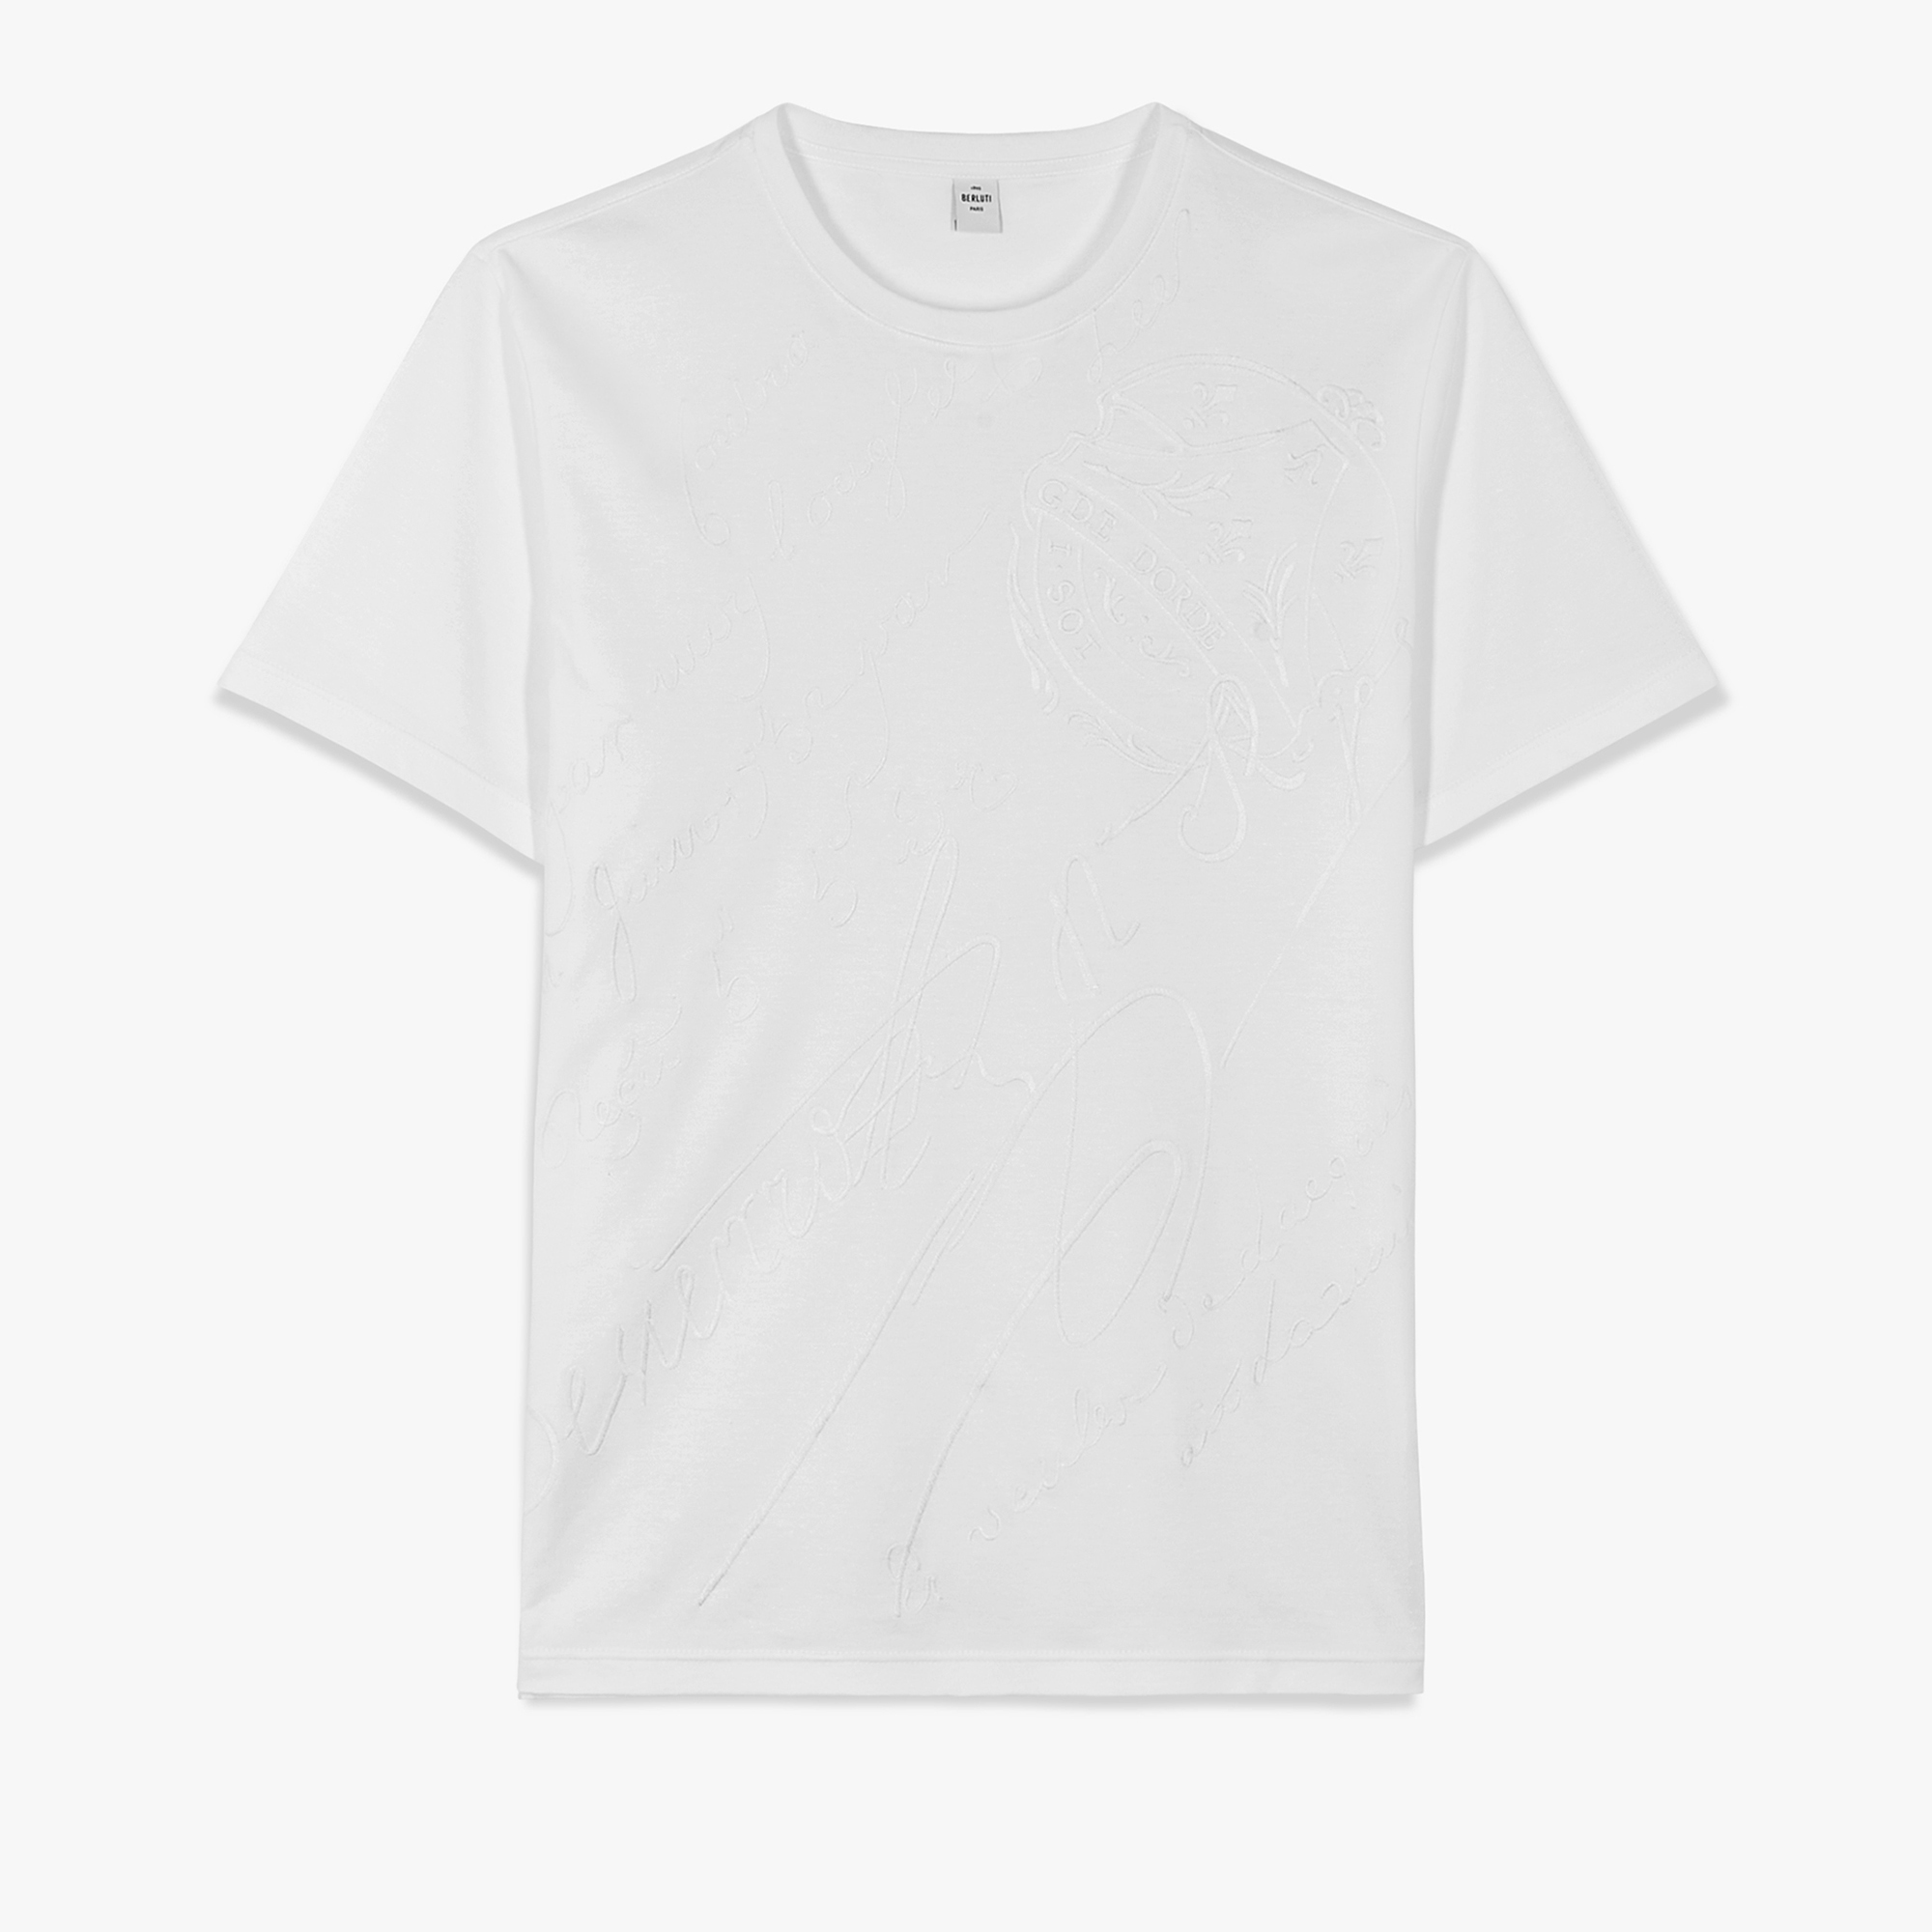 オールオーバー 刺繍スクリット Tシャツ, BLANC OPTIQUE, hi-res